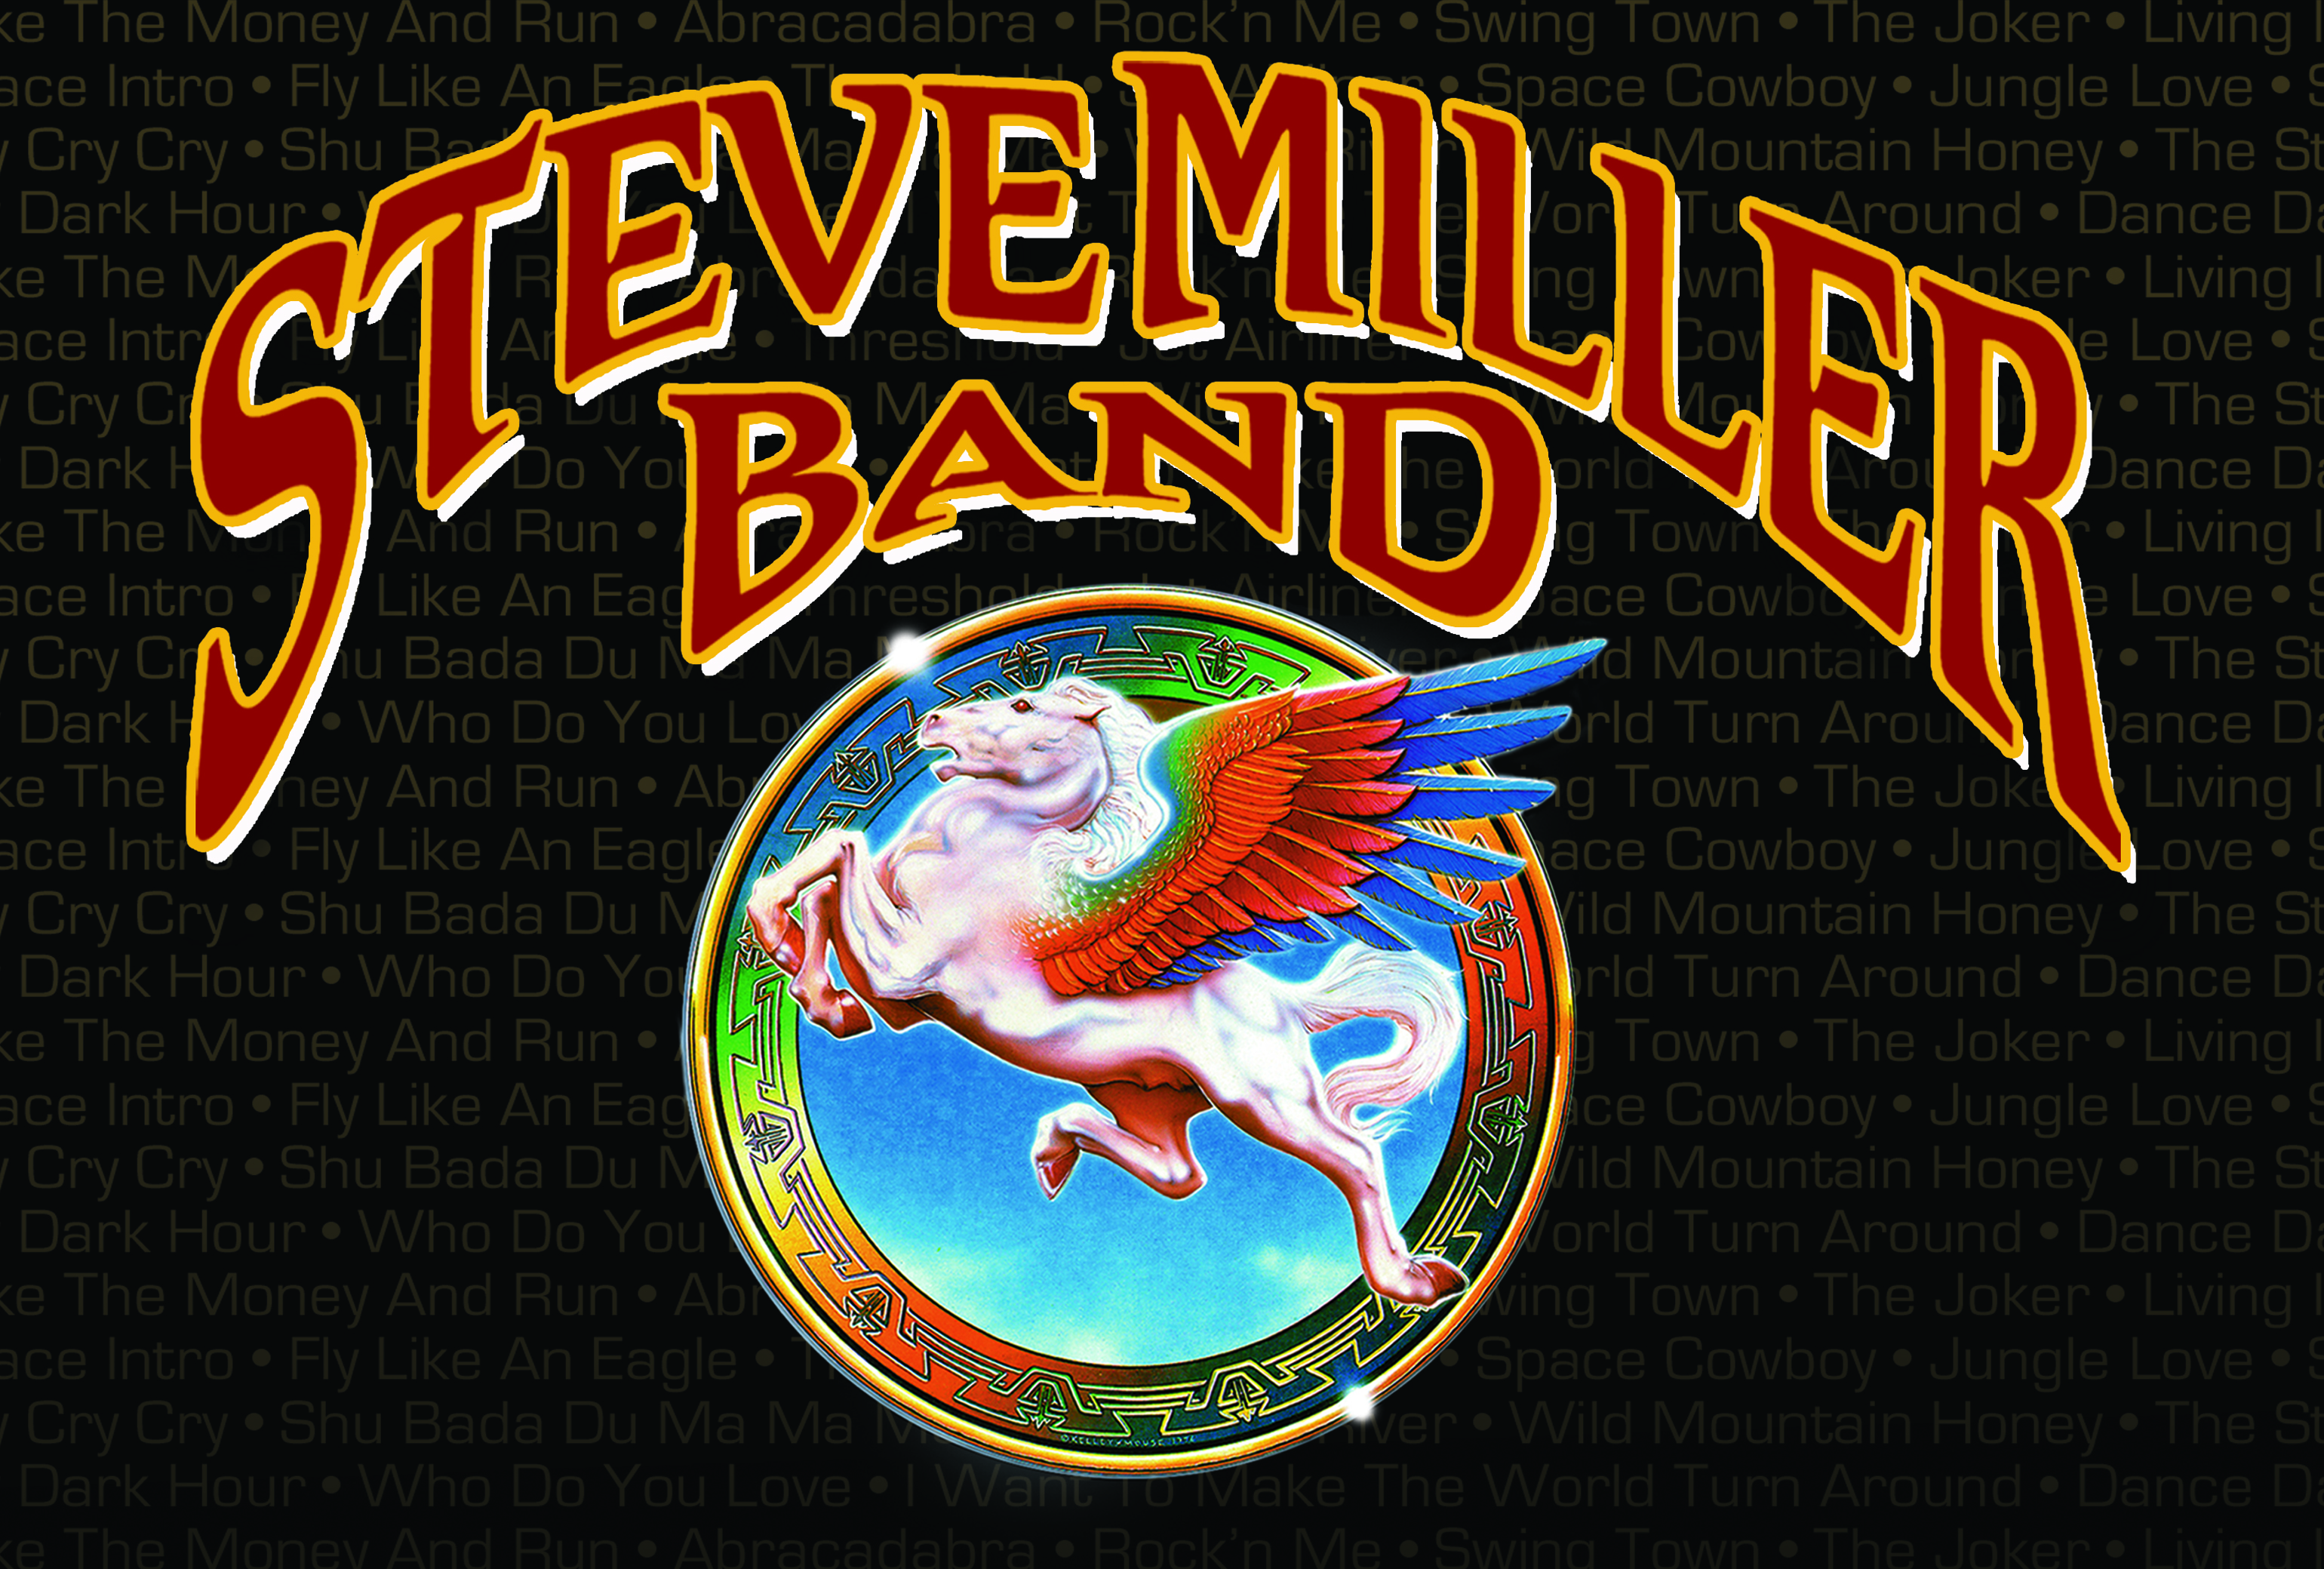 Steve Miller Band Wallpapers